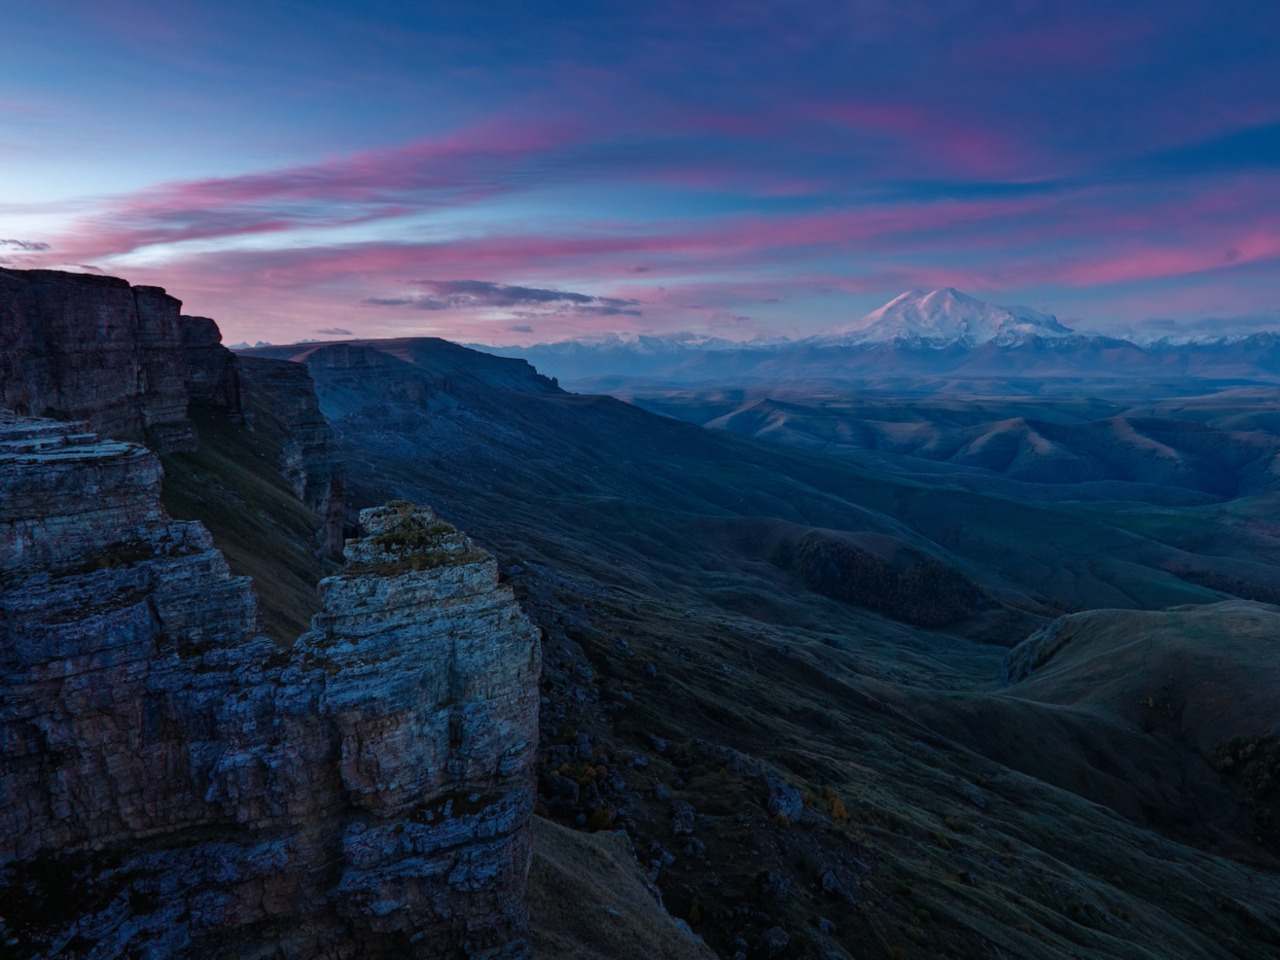 Невероятный рассвет на плато Бермамыт | Цена 13400₽, отзывы, описание экскурсии